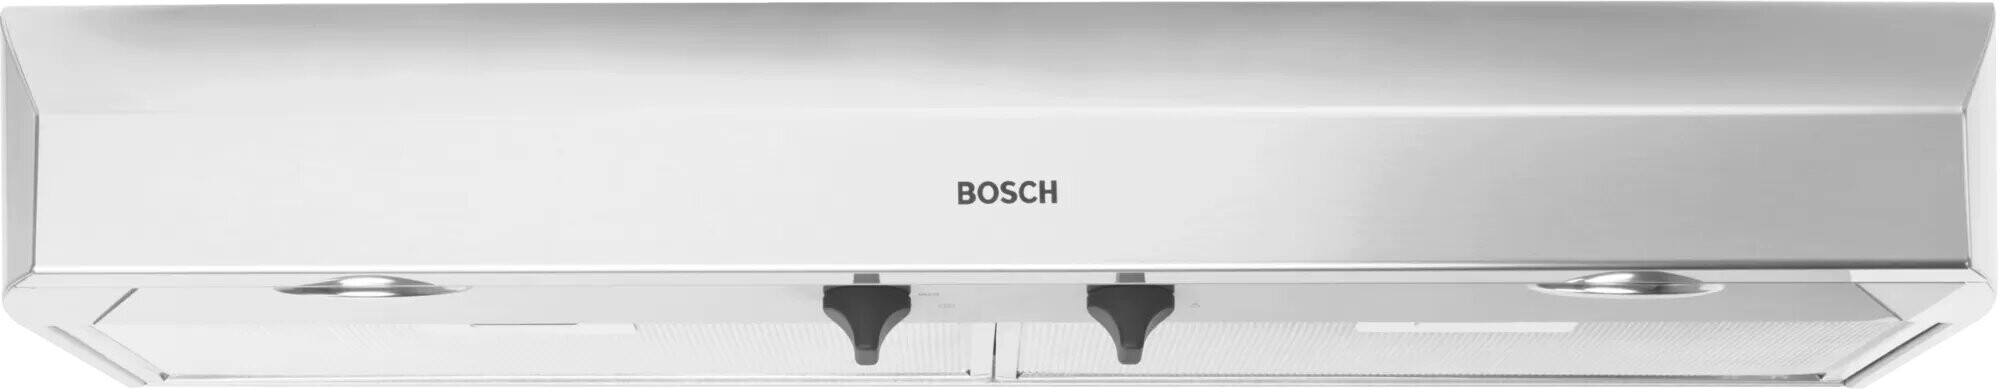 Bosch DUH36252UC